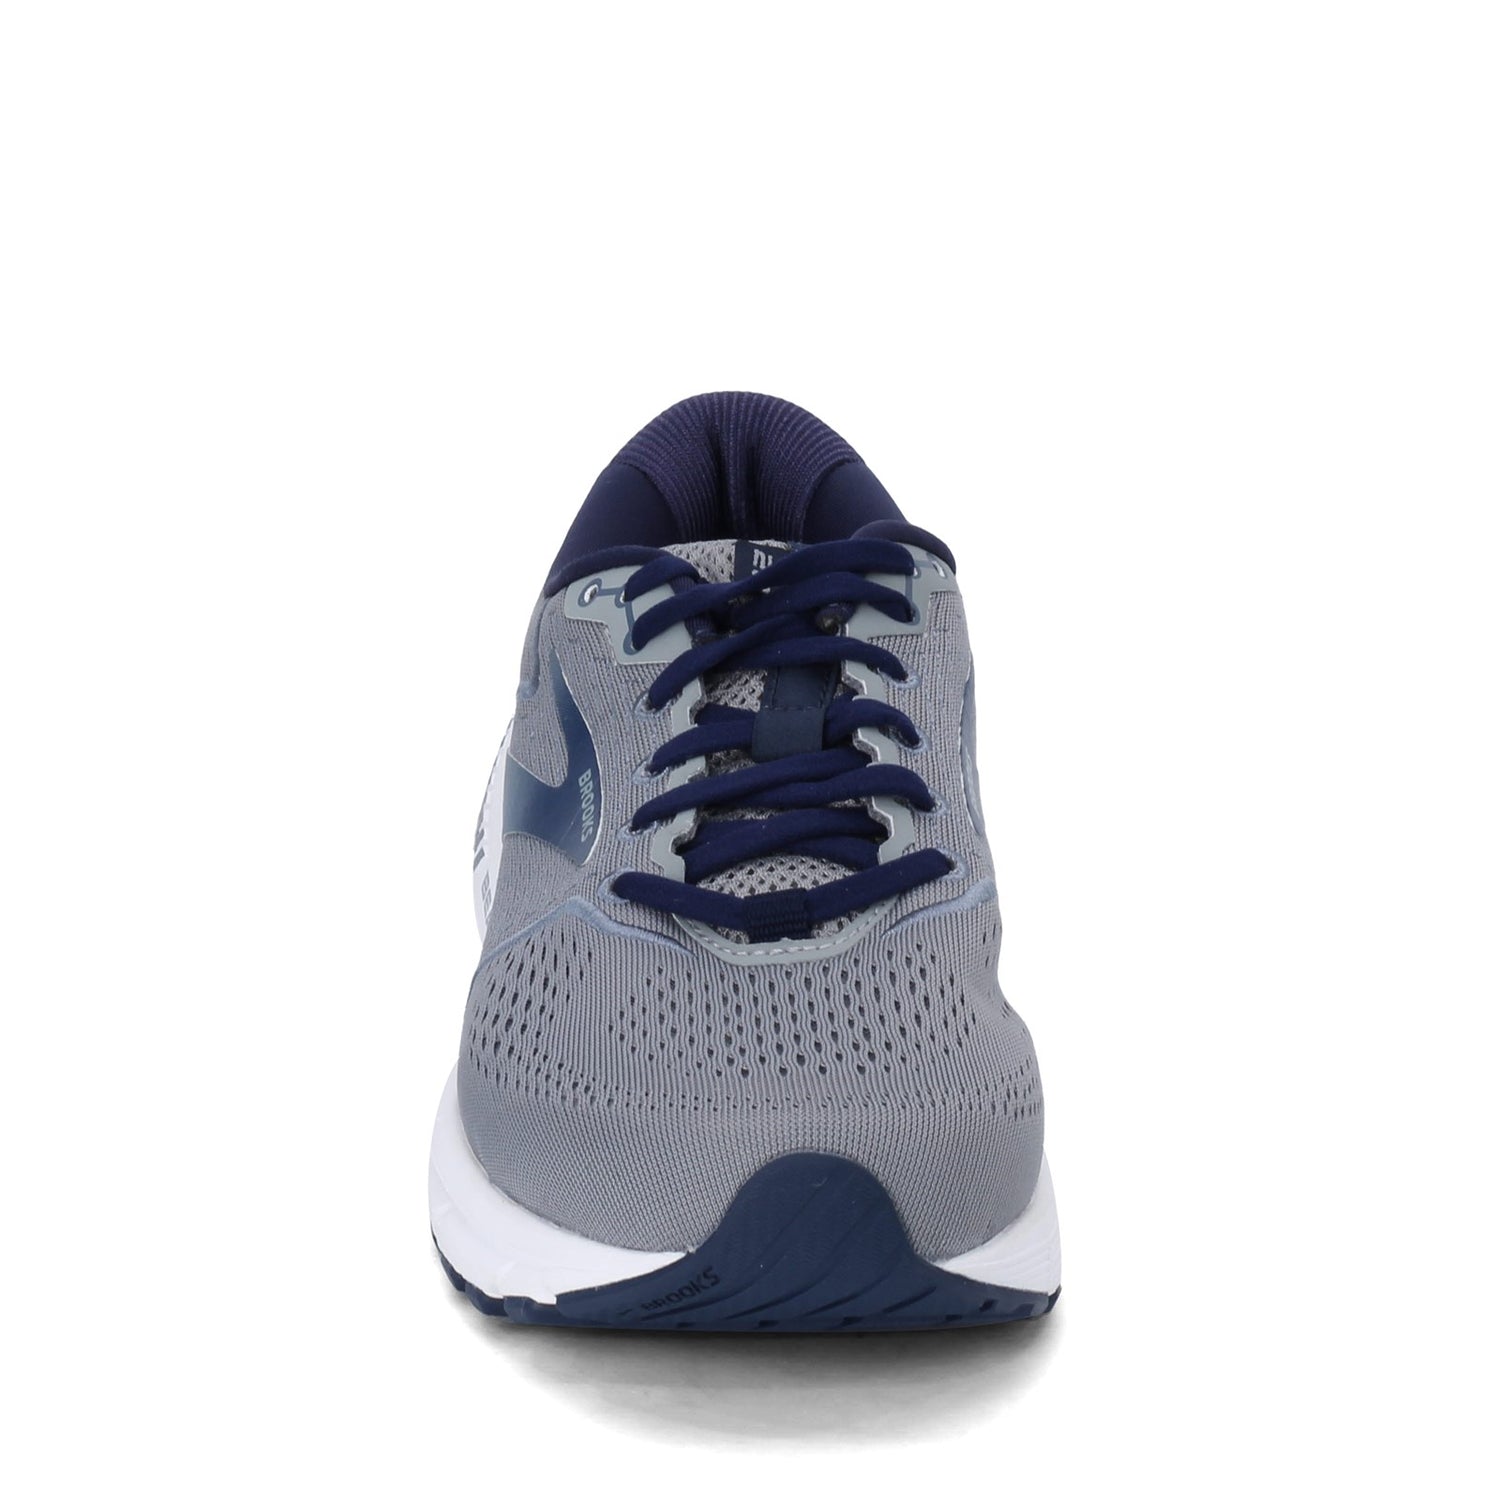 Peltz Shoes  Men's Brooks Beast 20 Running Shoe - Extra Wide Width Blue/Grey 110327 4E 491